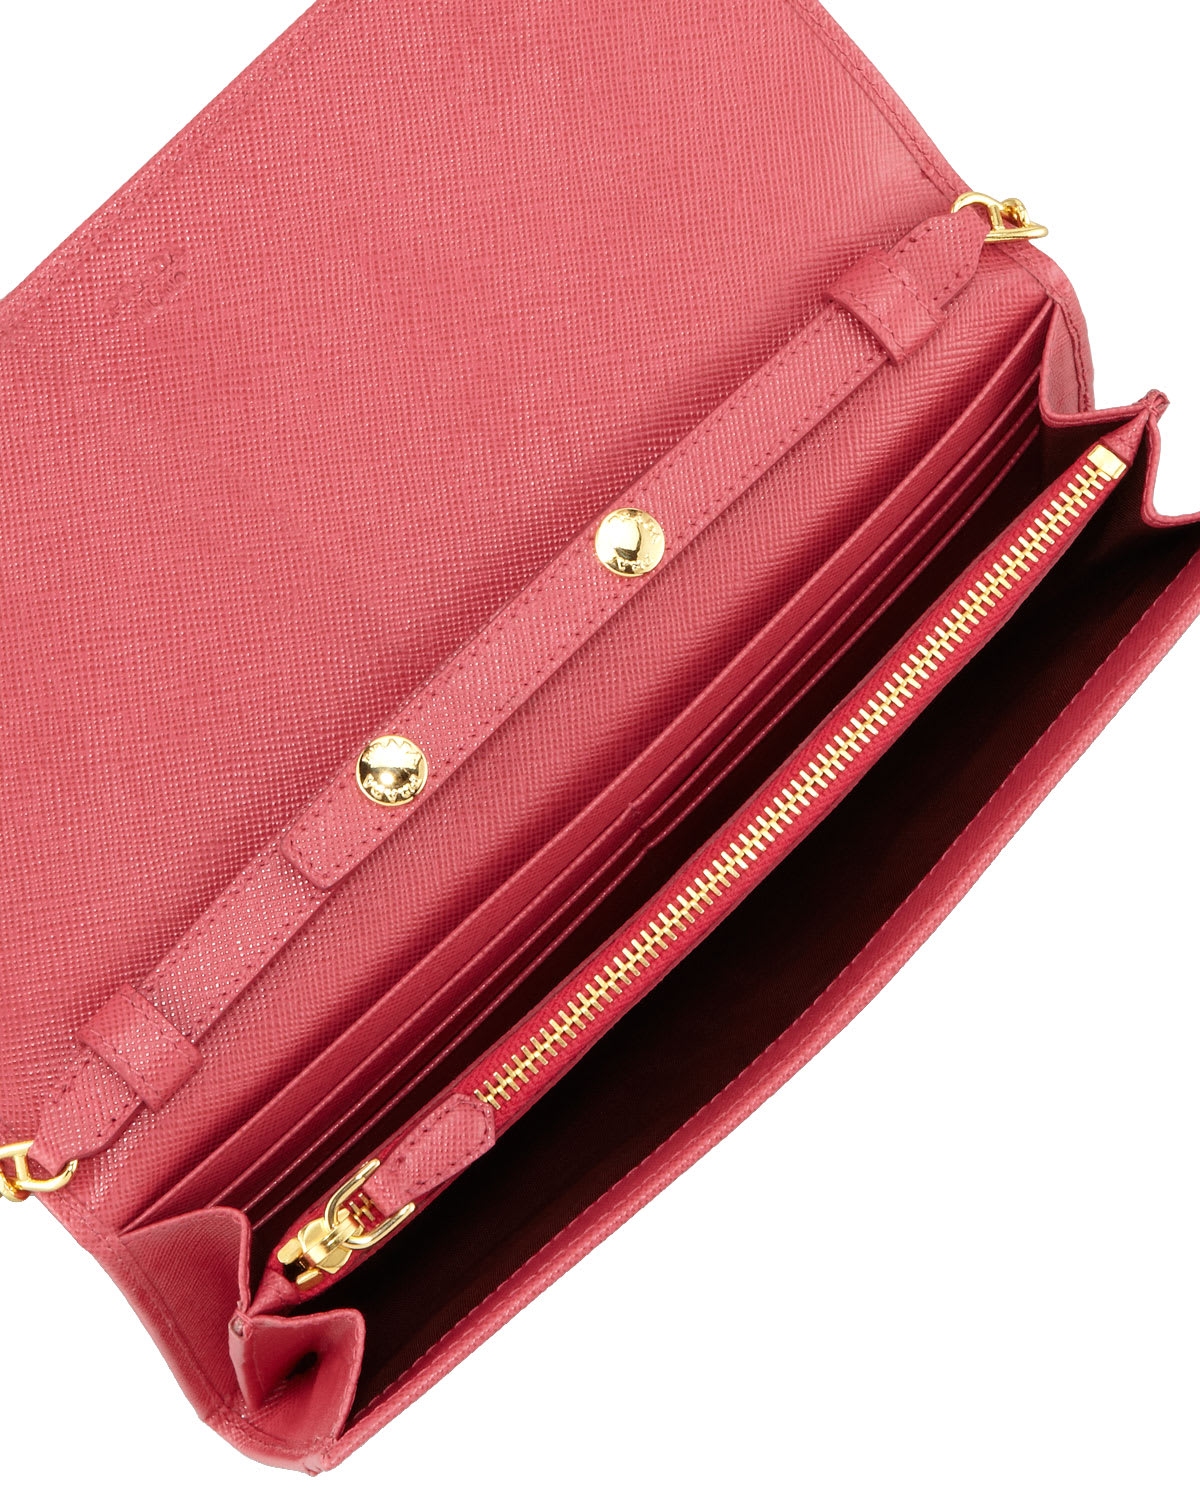 Prada Saffiano Wallet on a Chain, Red (Fuoco)